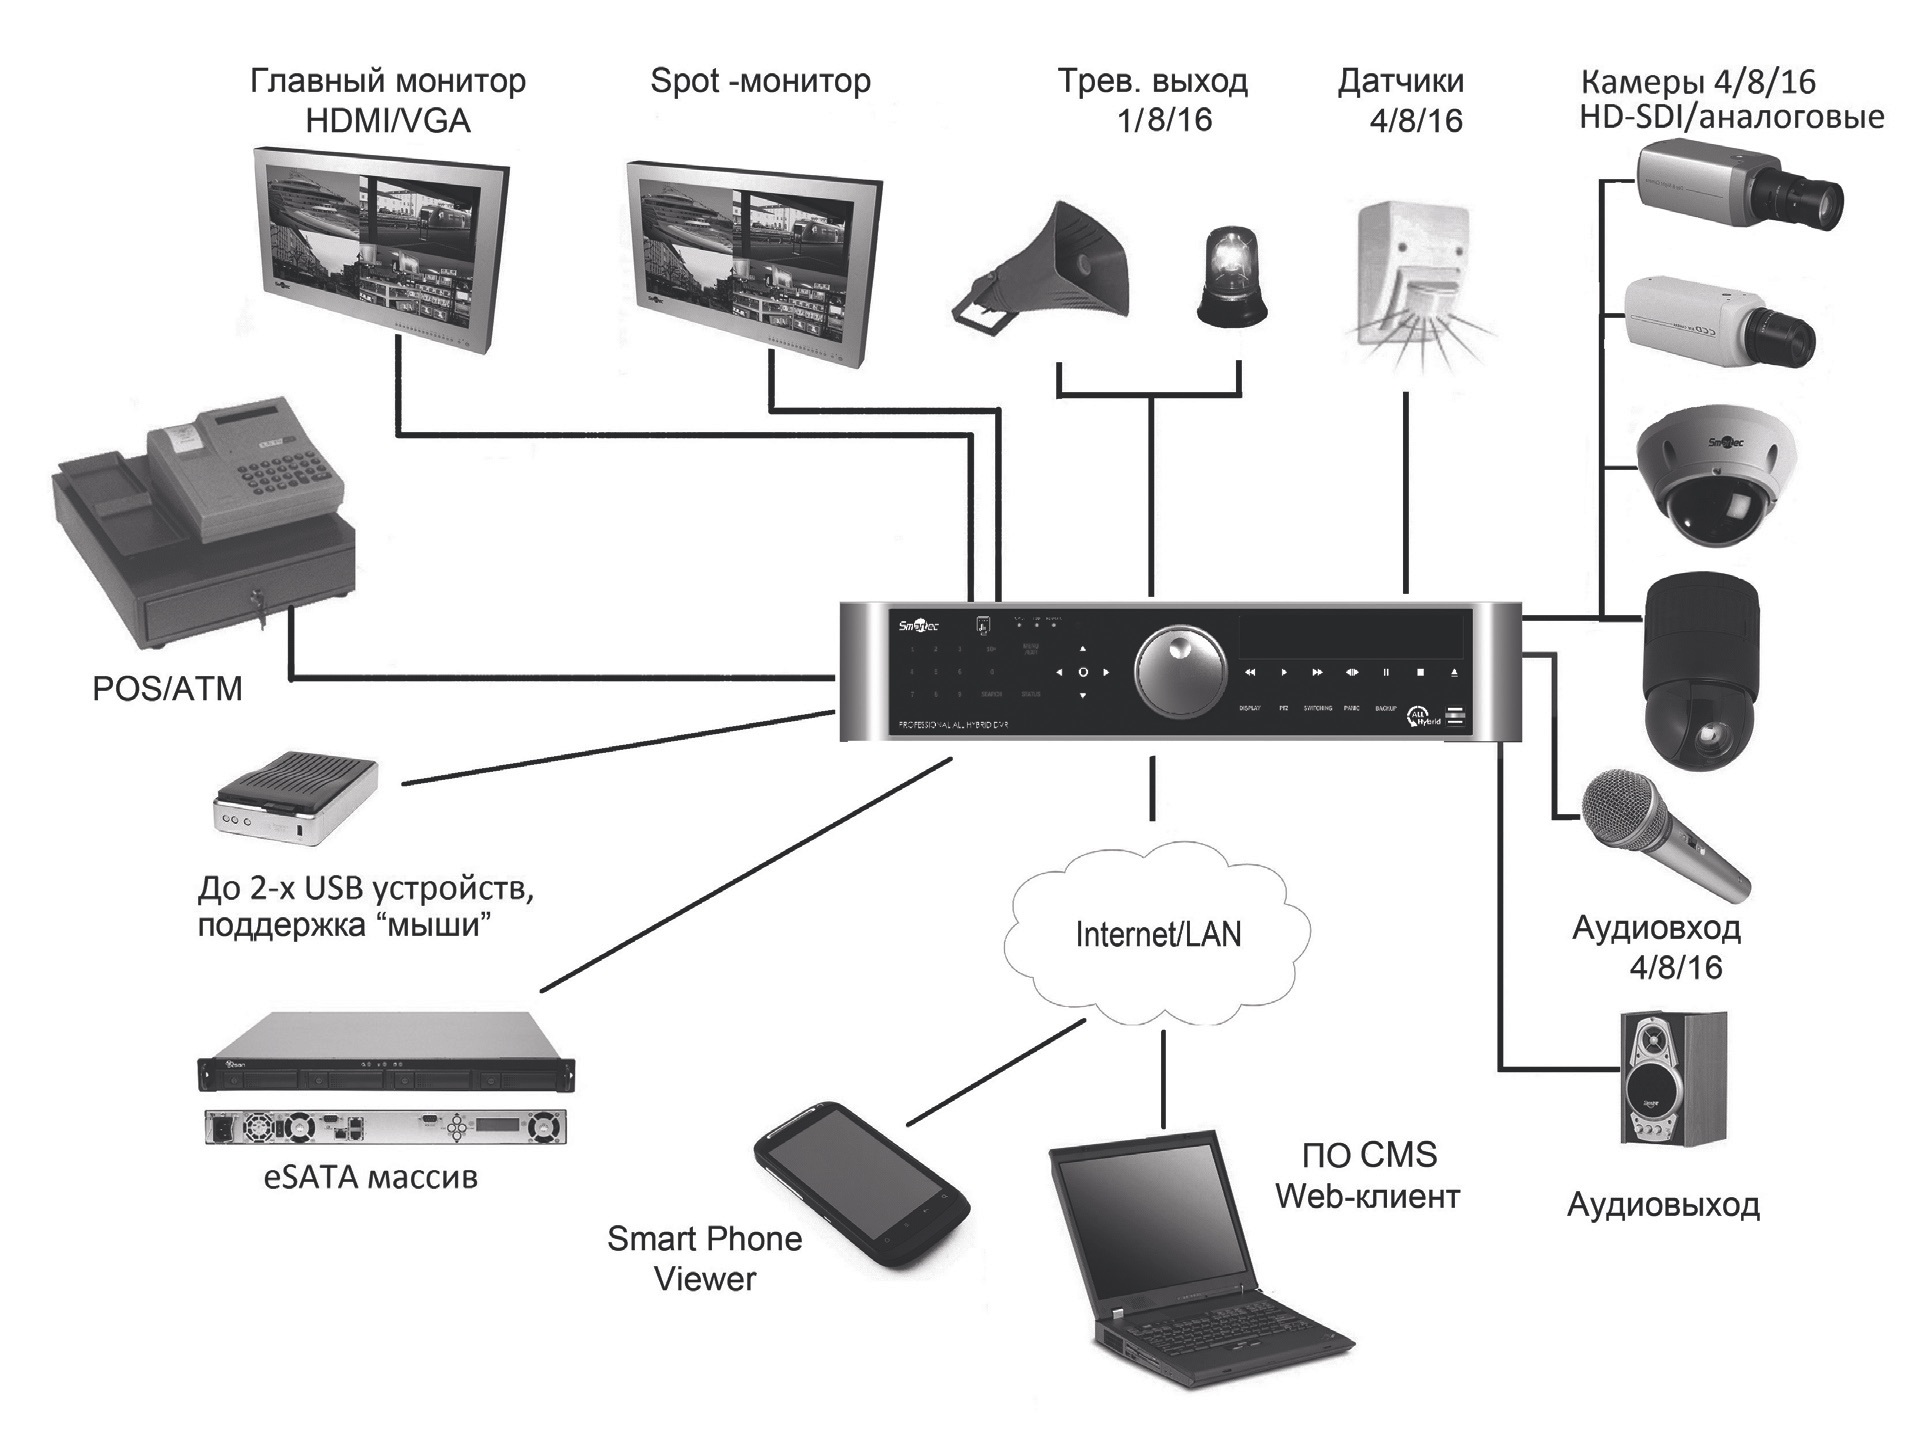 Схемы подключения регистратор. Схема IP камеры с гибридным видеорегистратором. Схема подключения 8 IP камер видеонаблюдения к видеорегистратору. Схема подключения 2 видеокамер и видеорегистратора. Цифровой видеорегистратор для видеонаблюдения схема подключения.